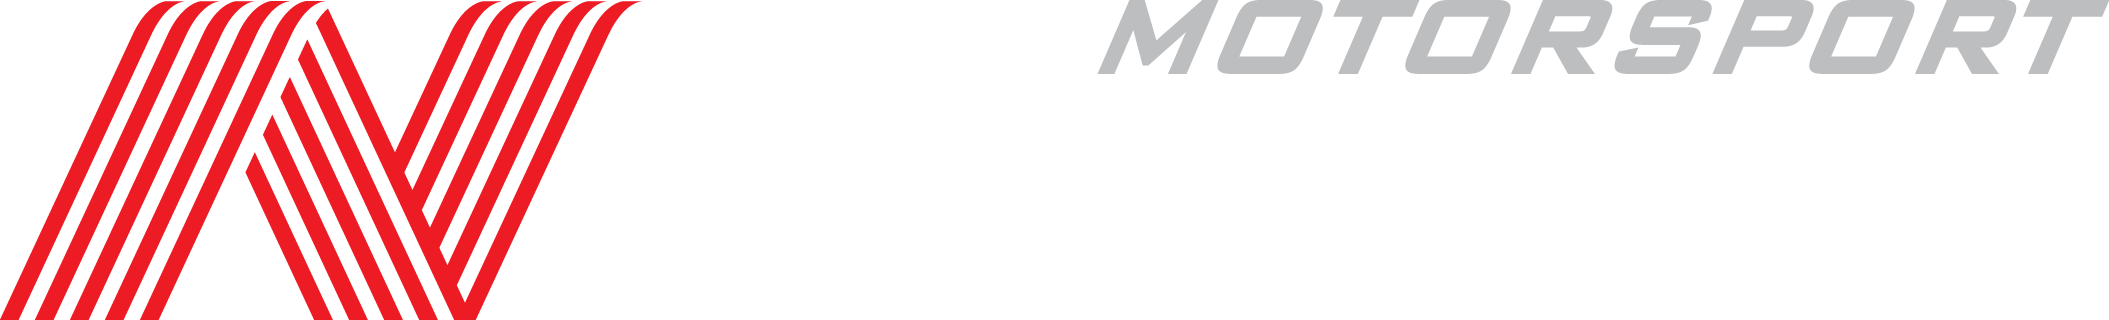 Copy_of_Motorsport-logo_w